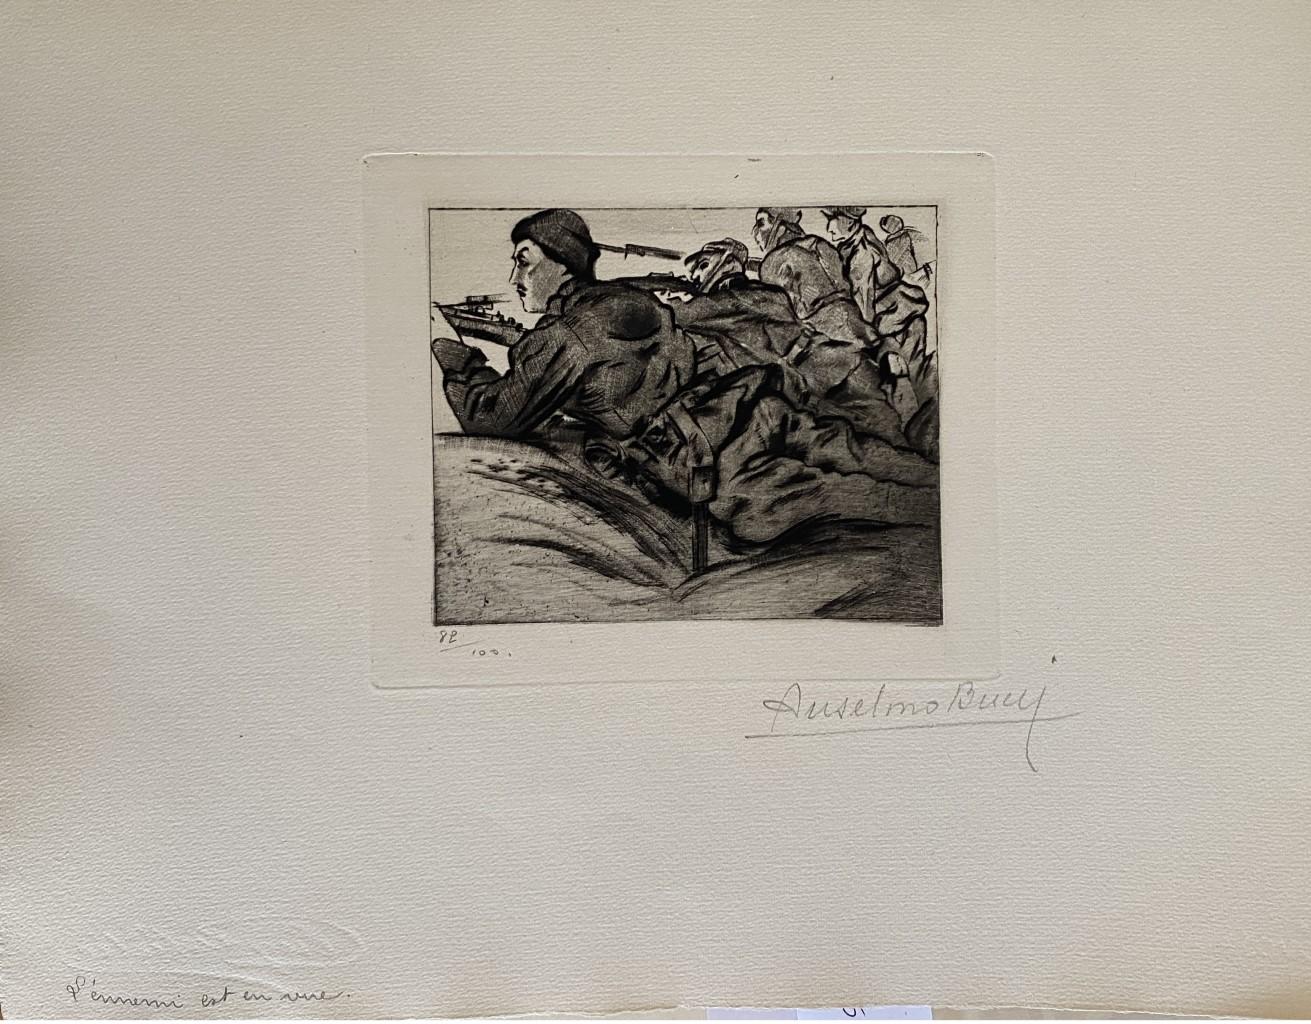 "Militaire" 1917 est une belle estampe en technique de gravure, réalisée par Anselmo Bucci (1887-1955).

Signé à la main. Numéroté 89/100 des tirages en bas à gauche. Dans le coin inférieur gauche, une iscription écrite au crayon, L'hermerni est en